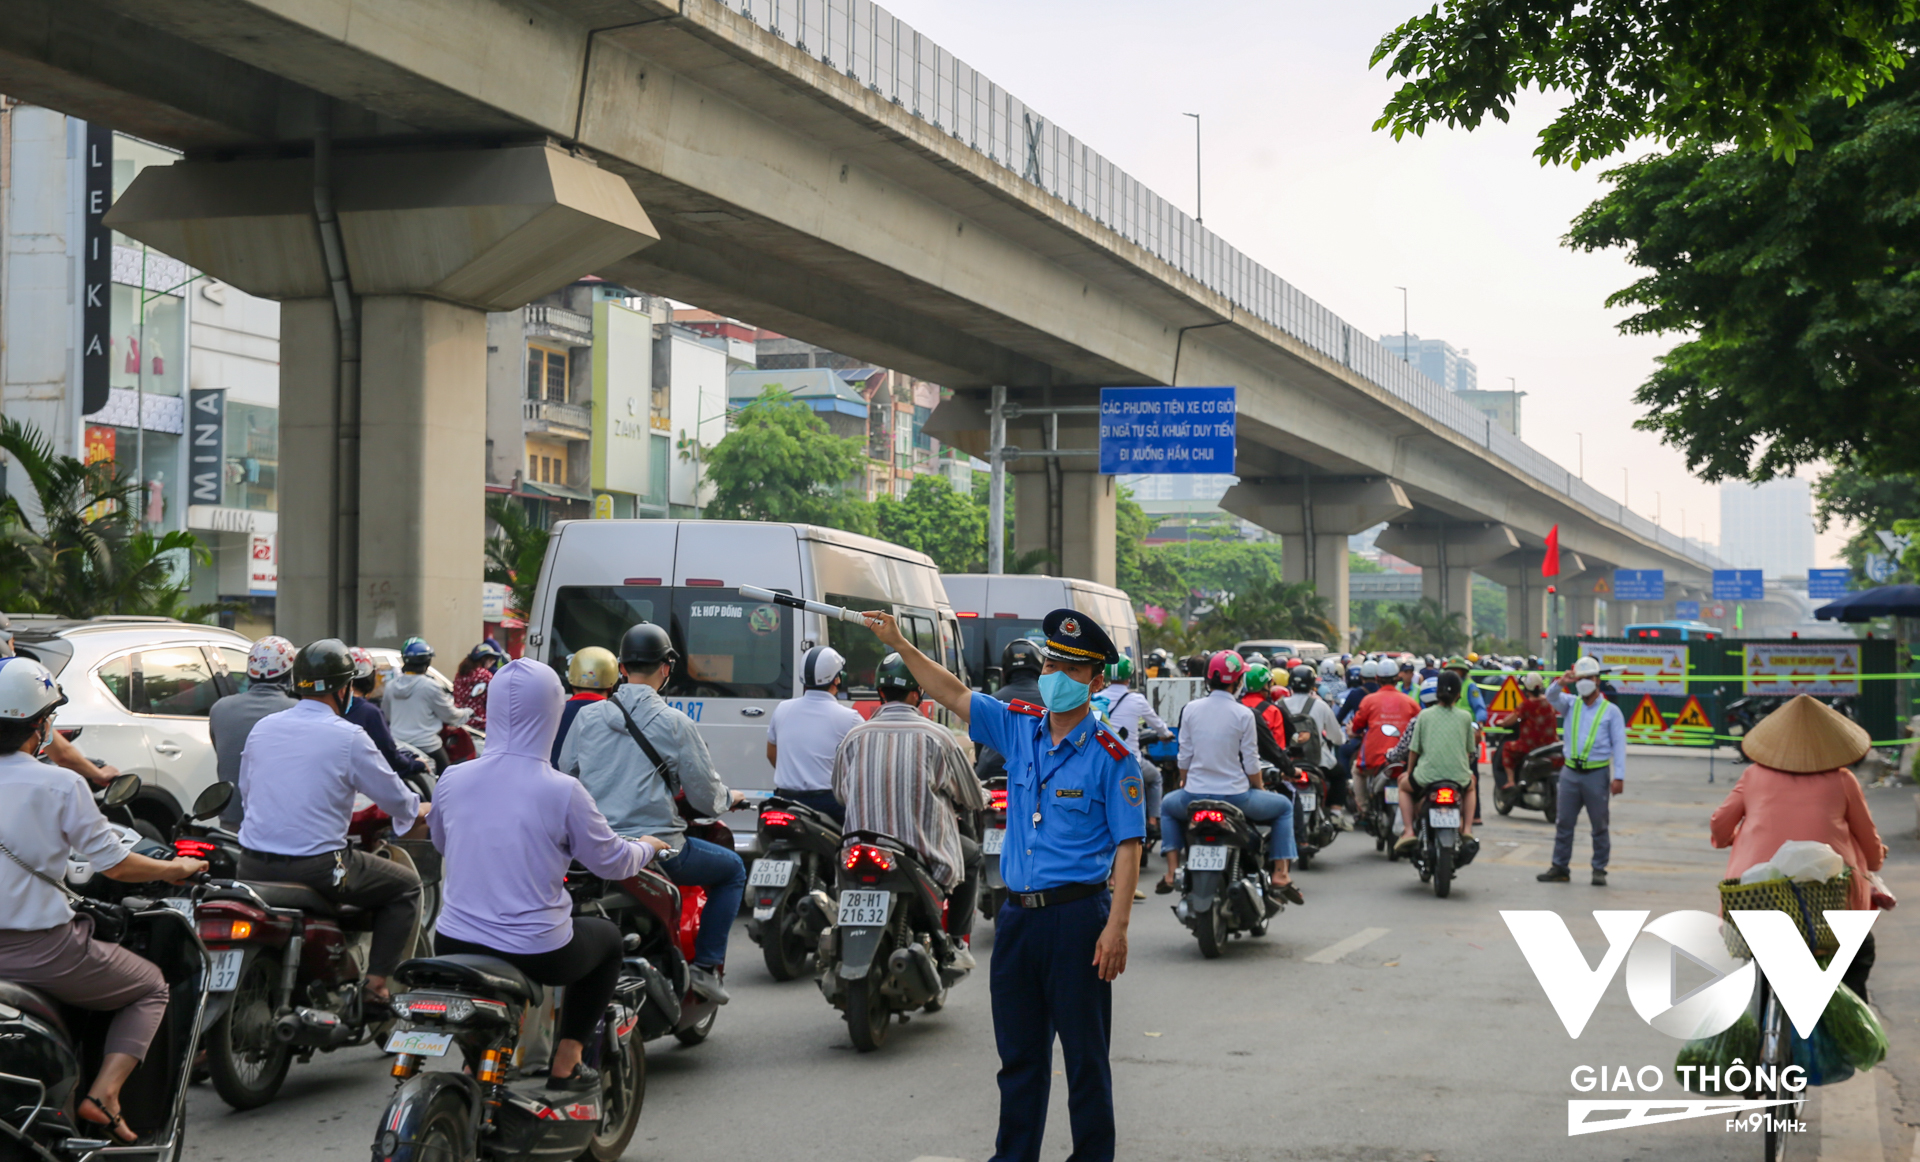 Ngay từ sớm, lực lượng Thanh tra Sở GTVT Hà Nội đã có mặt để hướng dẫn phân luồng cho các phương tiện tham gia giao thông tránh gây ùn tắc vào khung giờ cao điểm